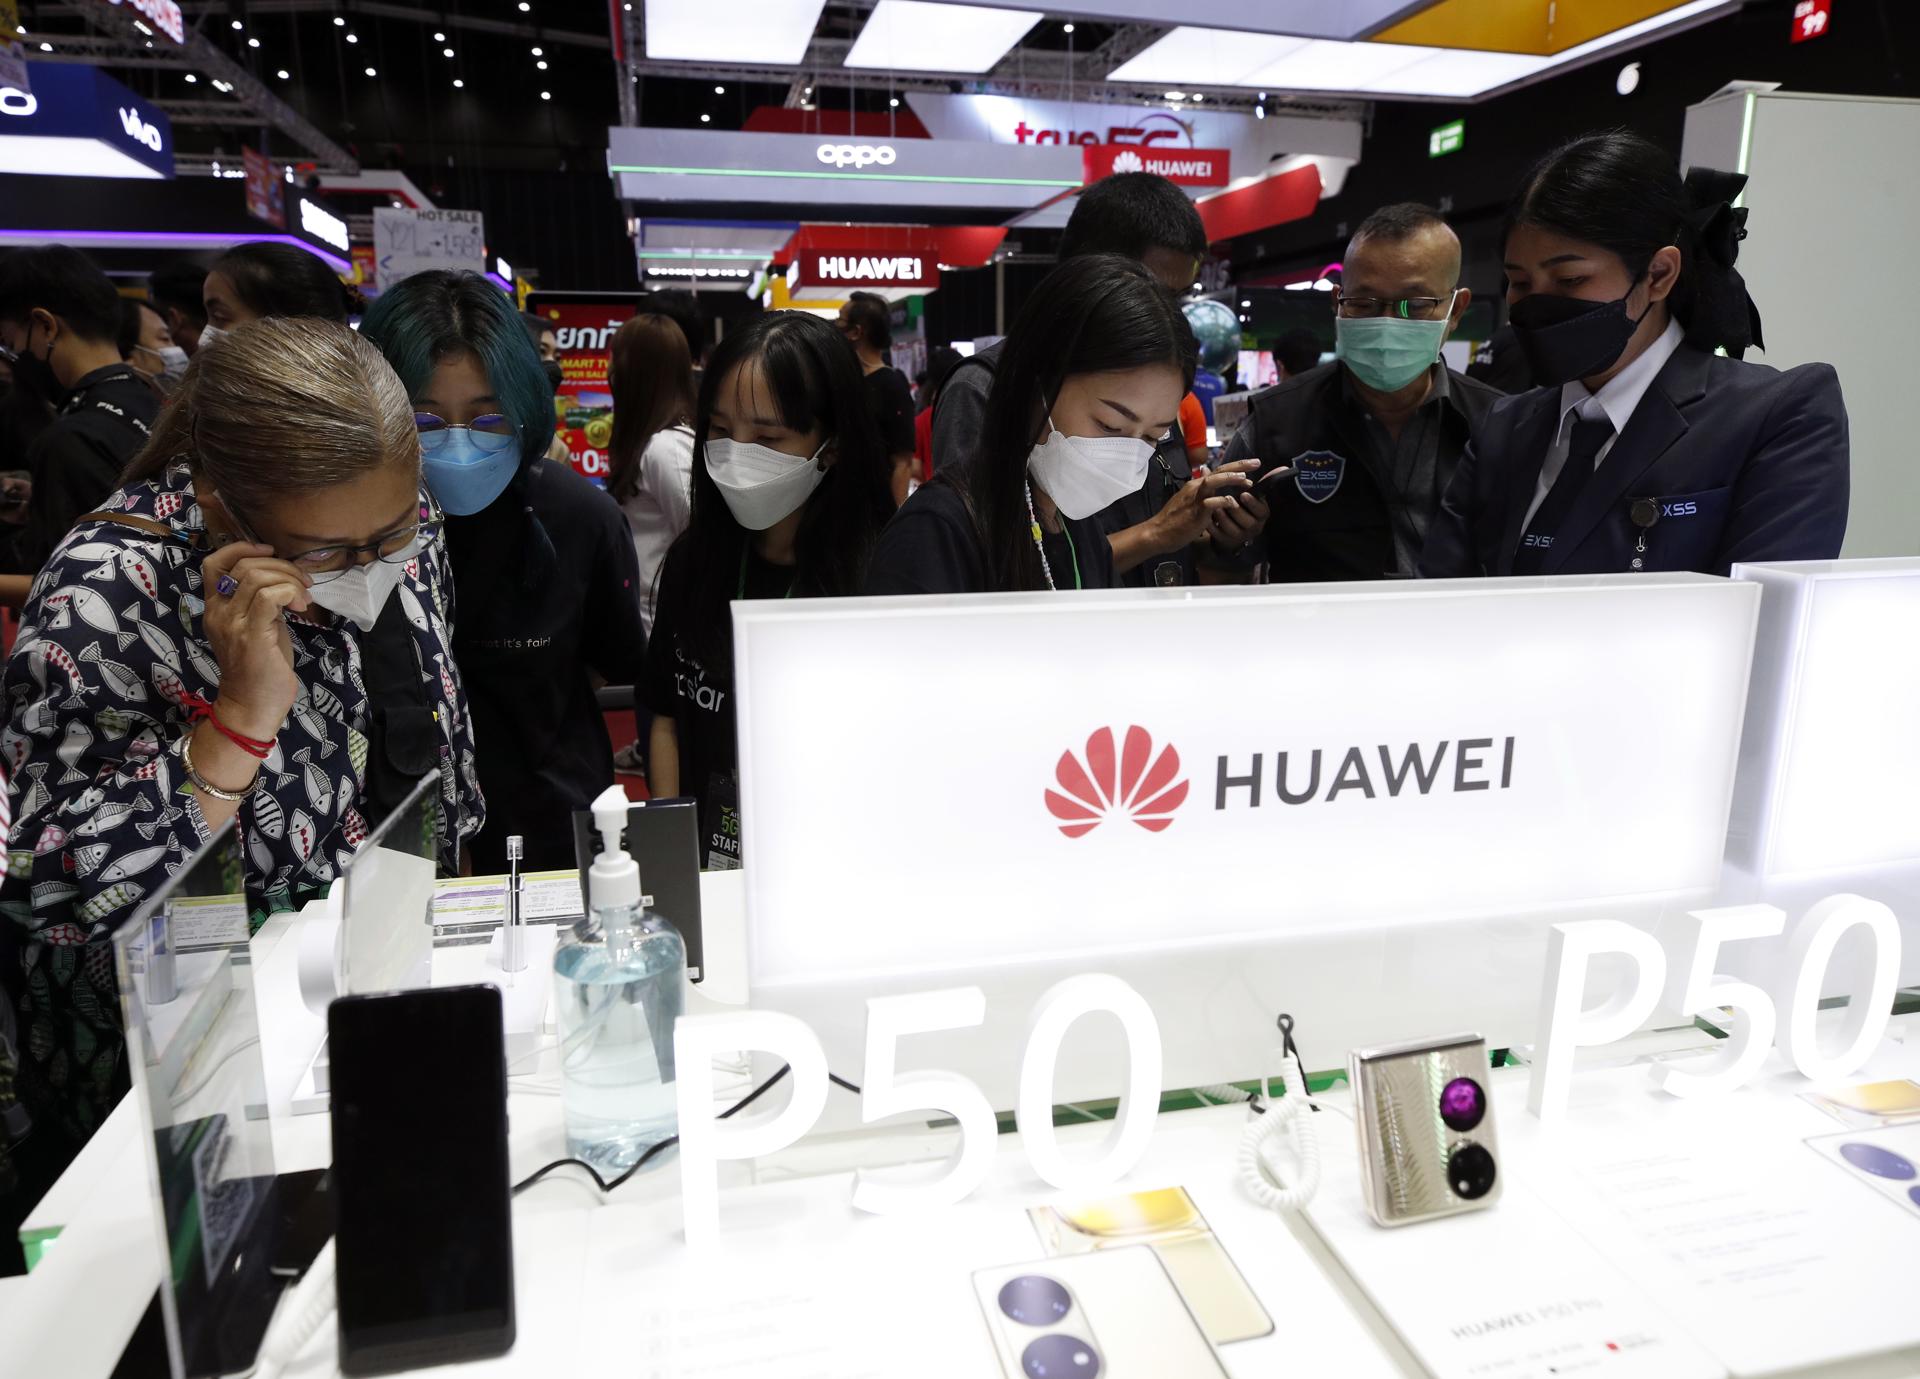 EE.UU. prohíbe vender e importar productos de Huawei y ZTE